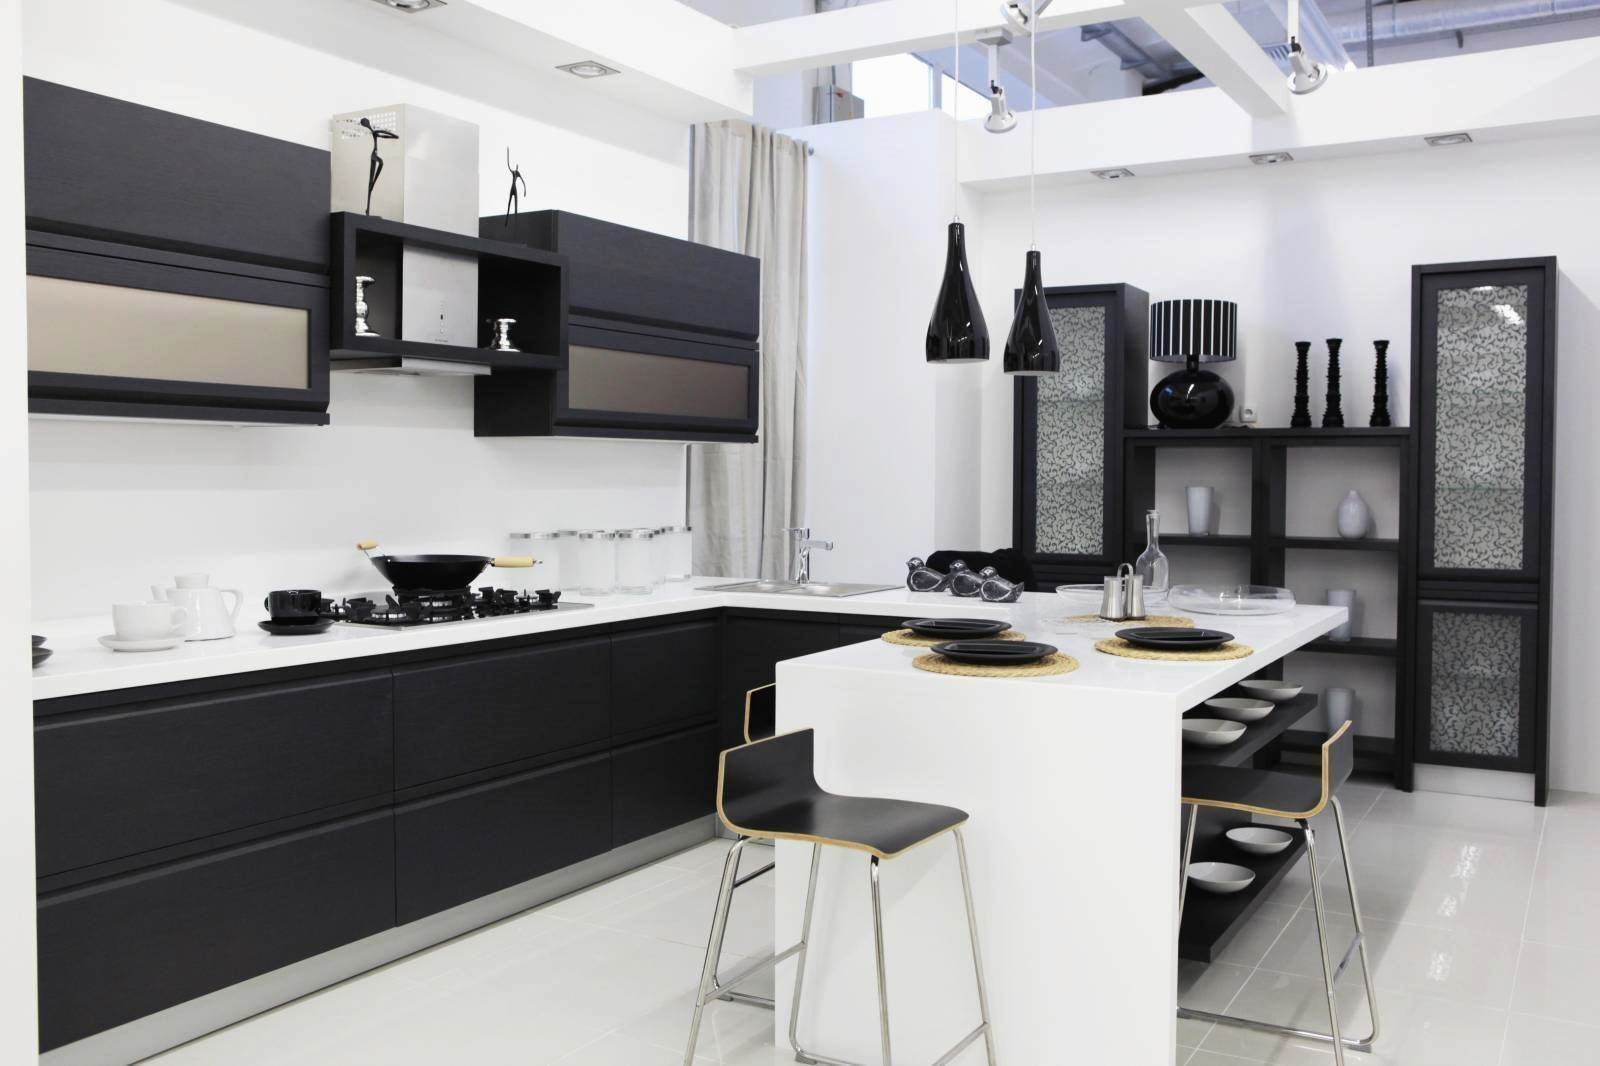 Кухня в черных тонах. Бело черная кухня. Черный кухонный гарнитур. Черно белая стильная кухня. Черно-белые кухни в интерьере.